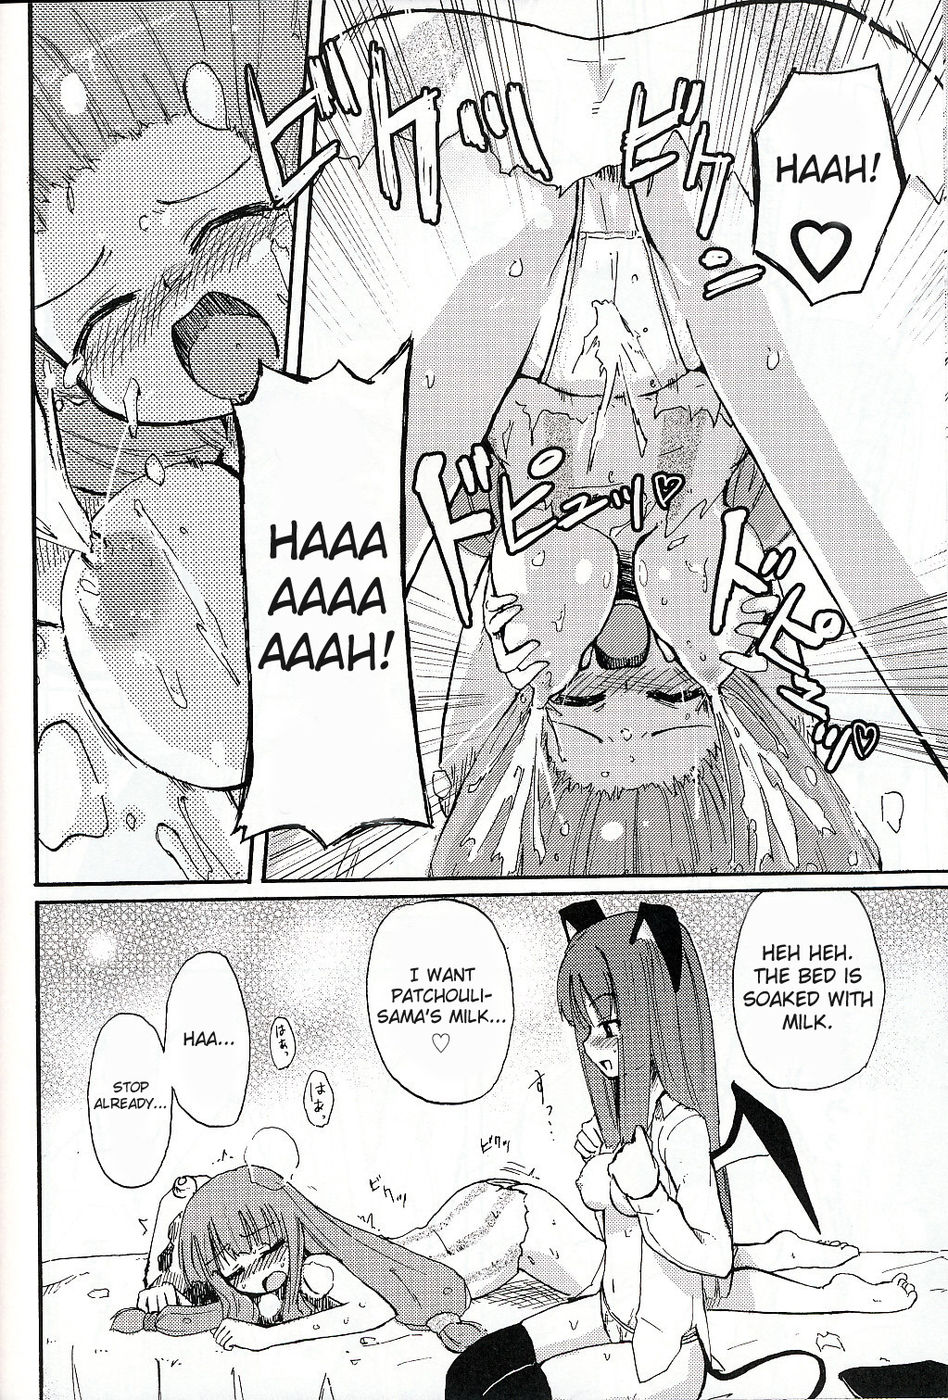 Hentai Manga Comic-Patchun! Milk-Read-11